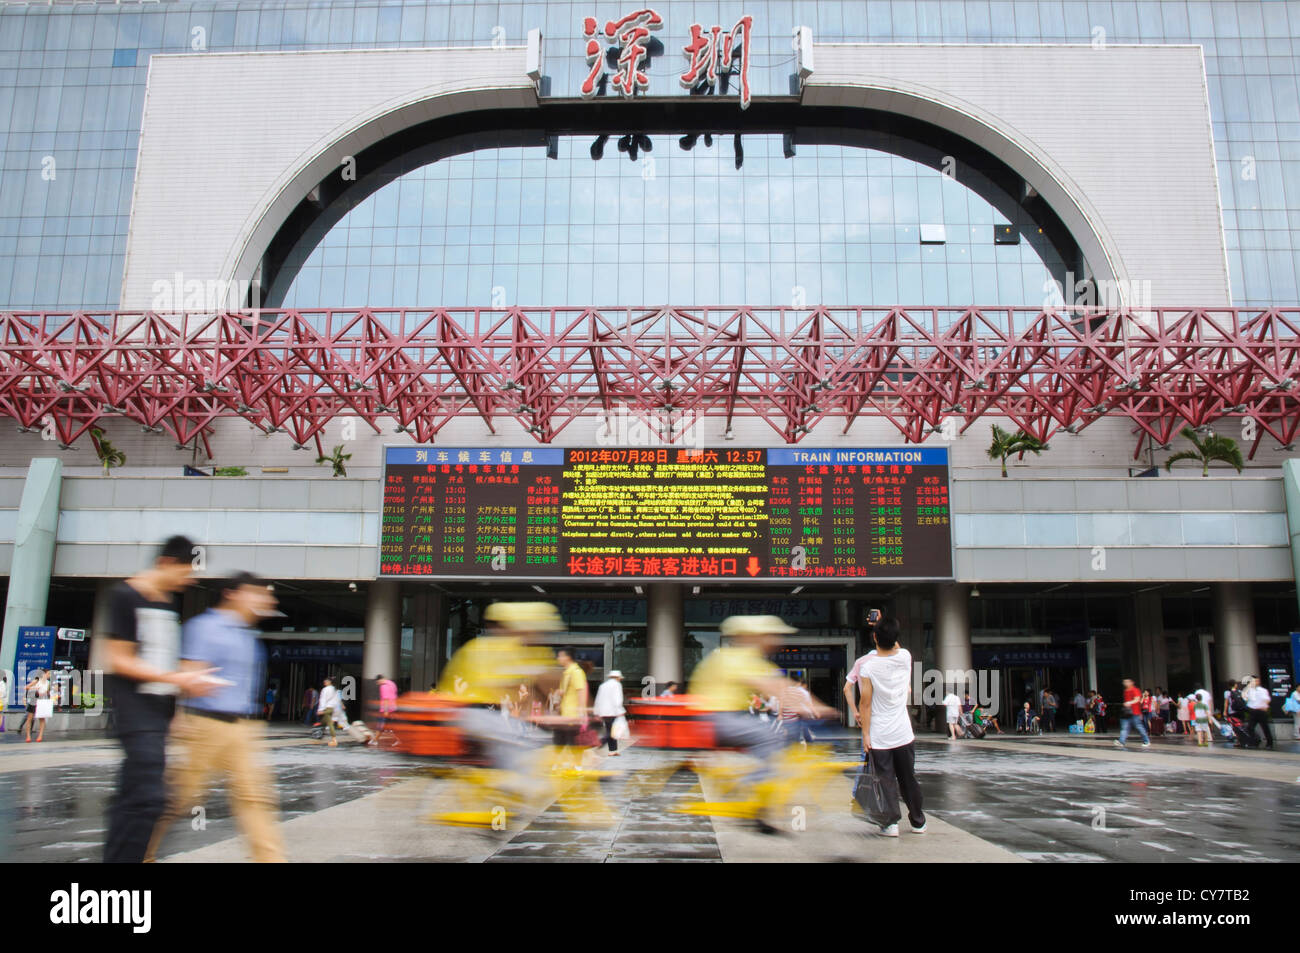 Shenzhen Railway Station entrance, Shenzhen, China Stock Photo